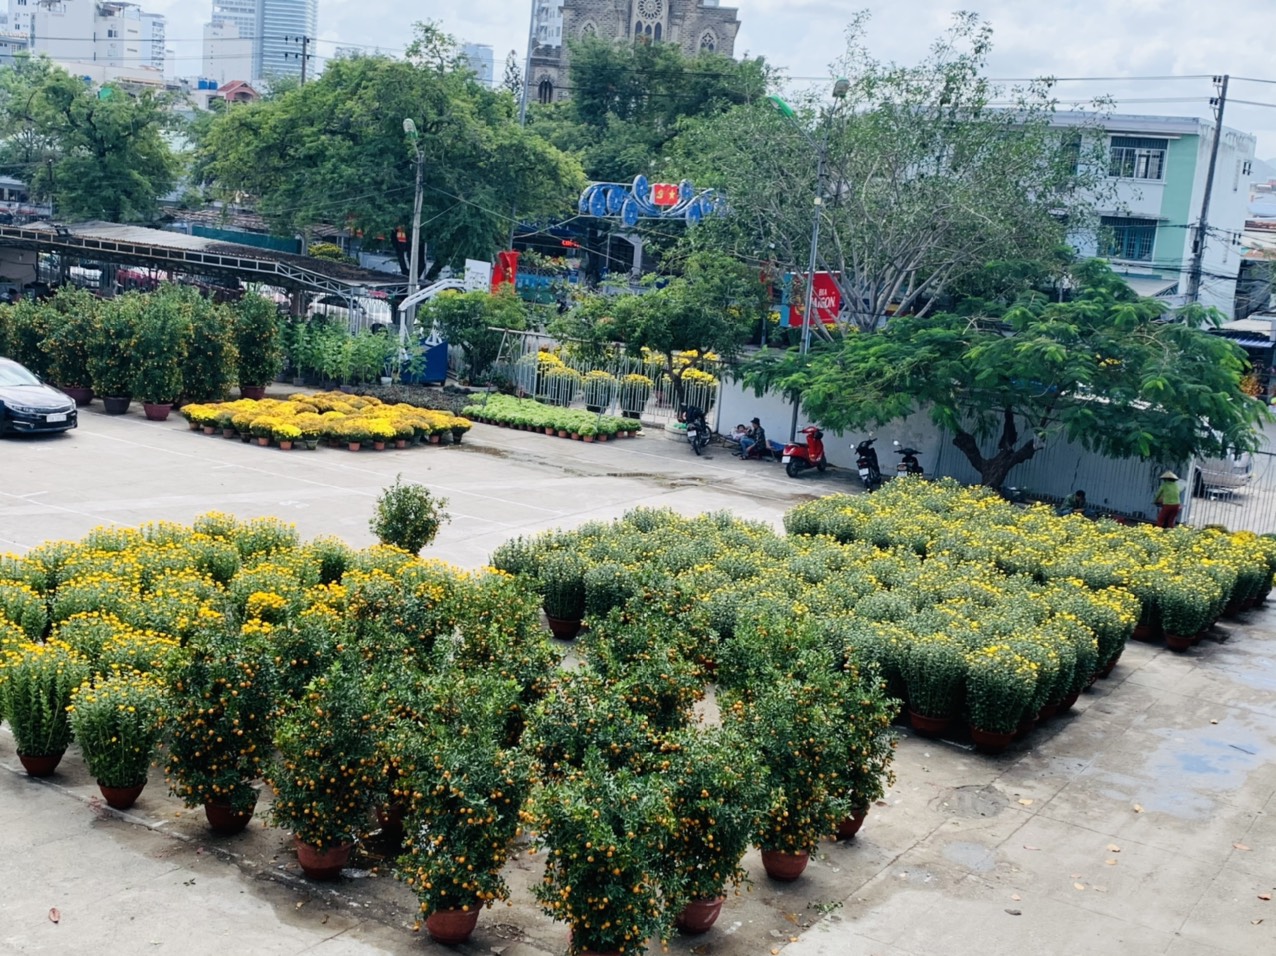 Lượng hoa bày bán ở khu vực Nhà Thiếu nhi tỉnh Khánh Hòa  ít hơn mọi năm